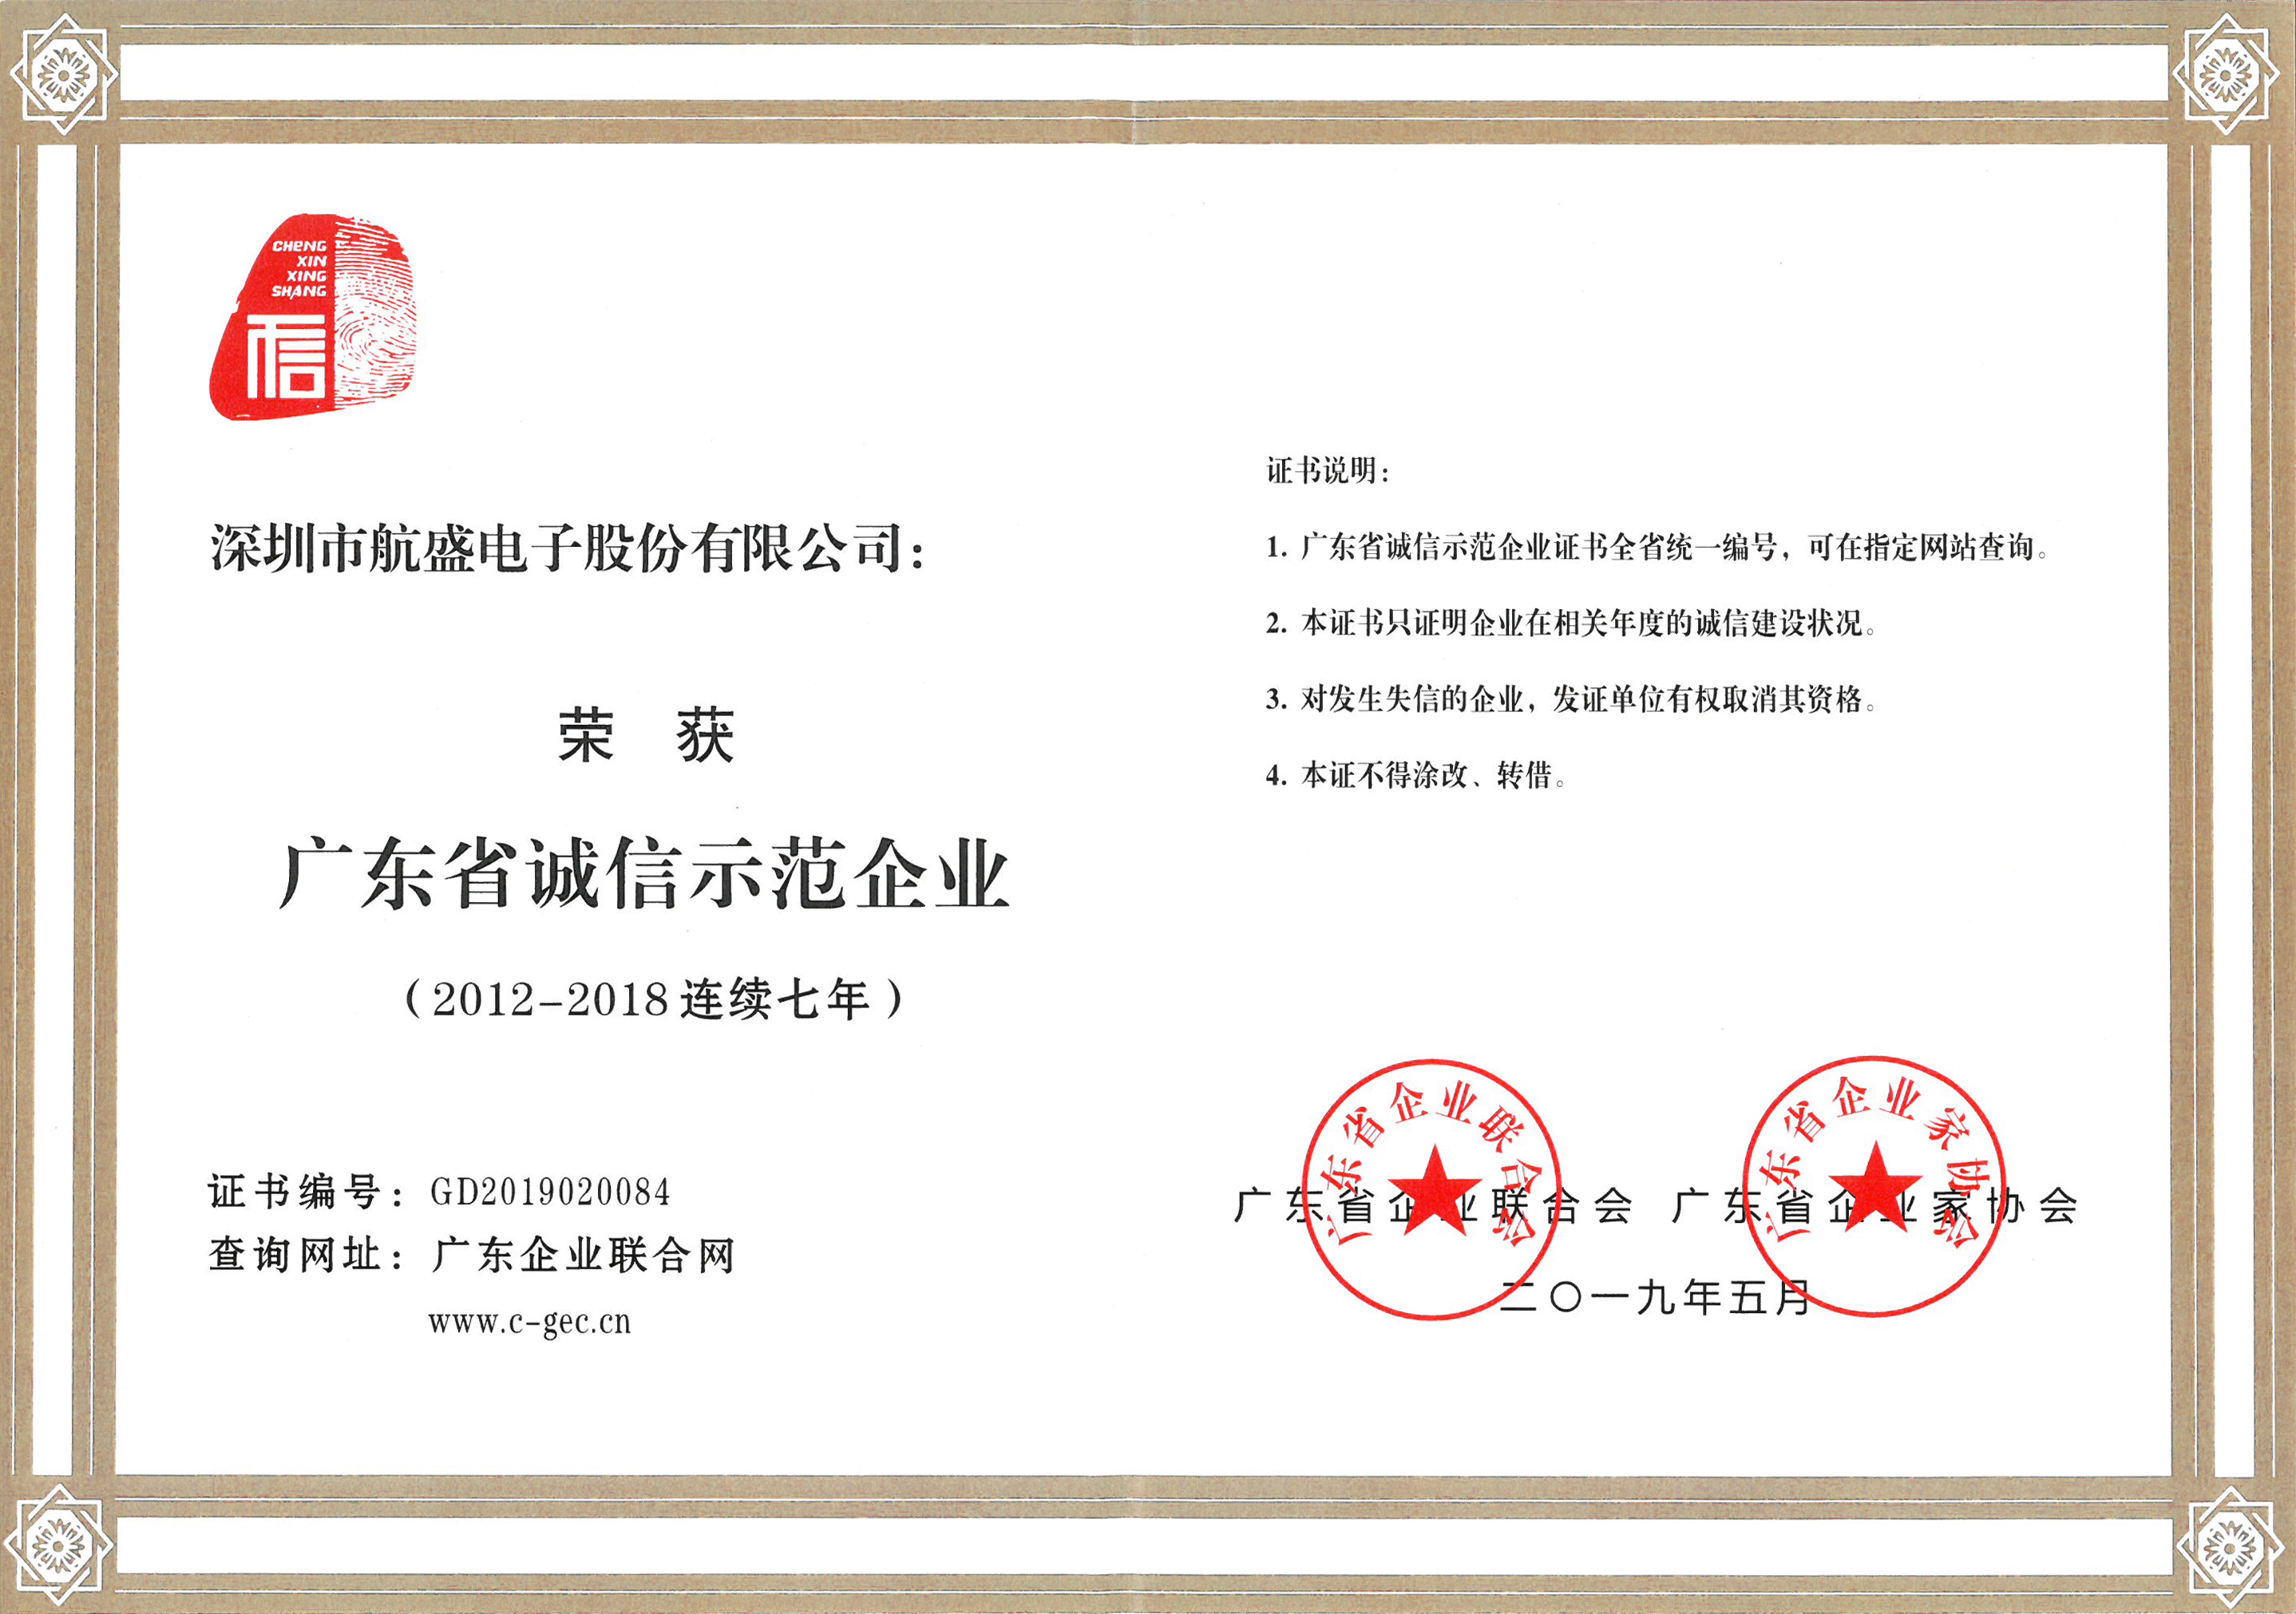 【企業聲譽】航盛電子榮獲“廣東省誠信樹模企業”聲譽